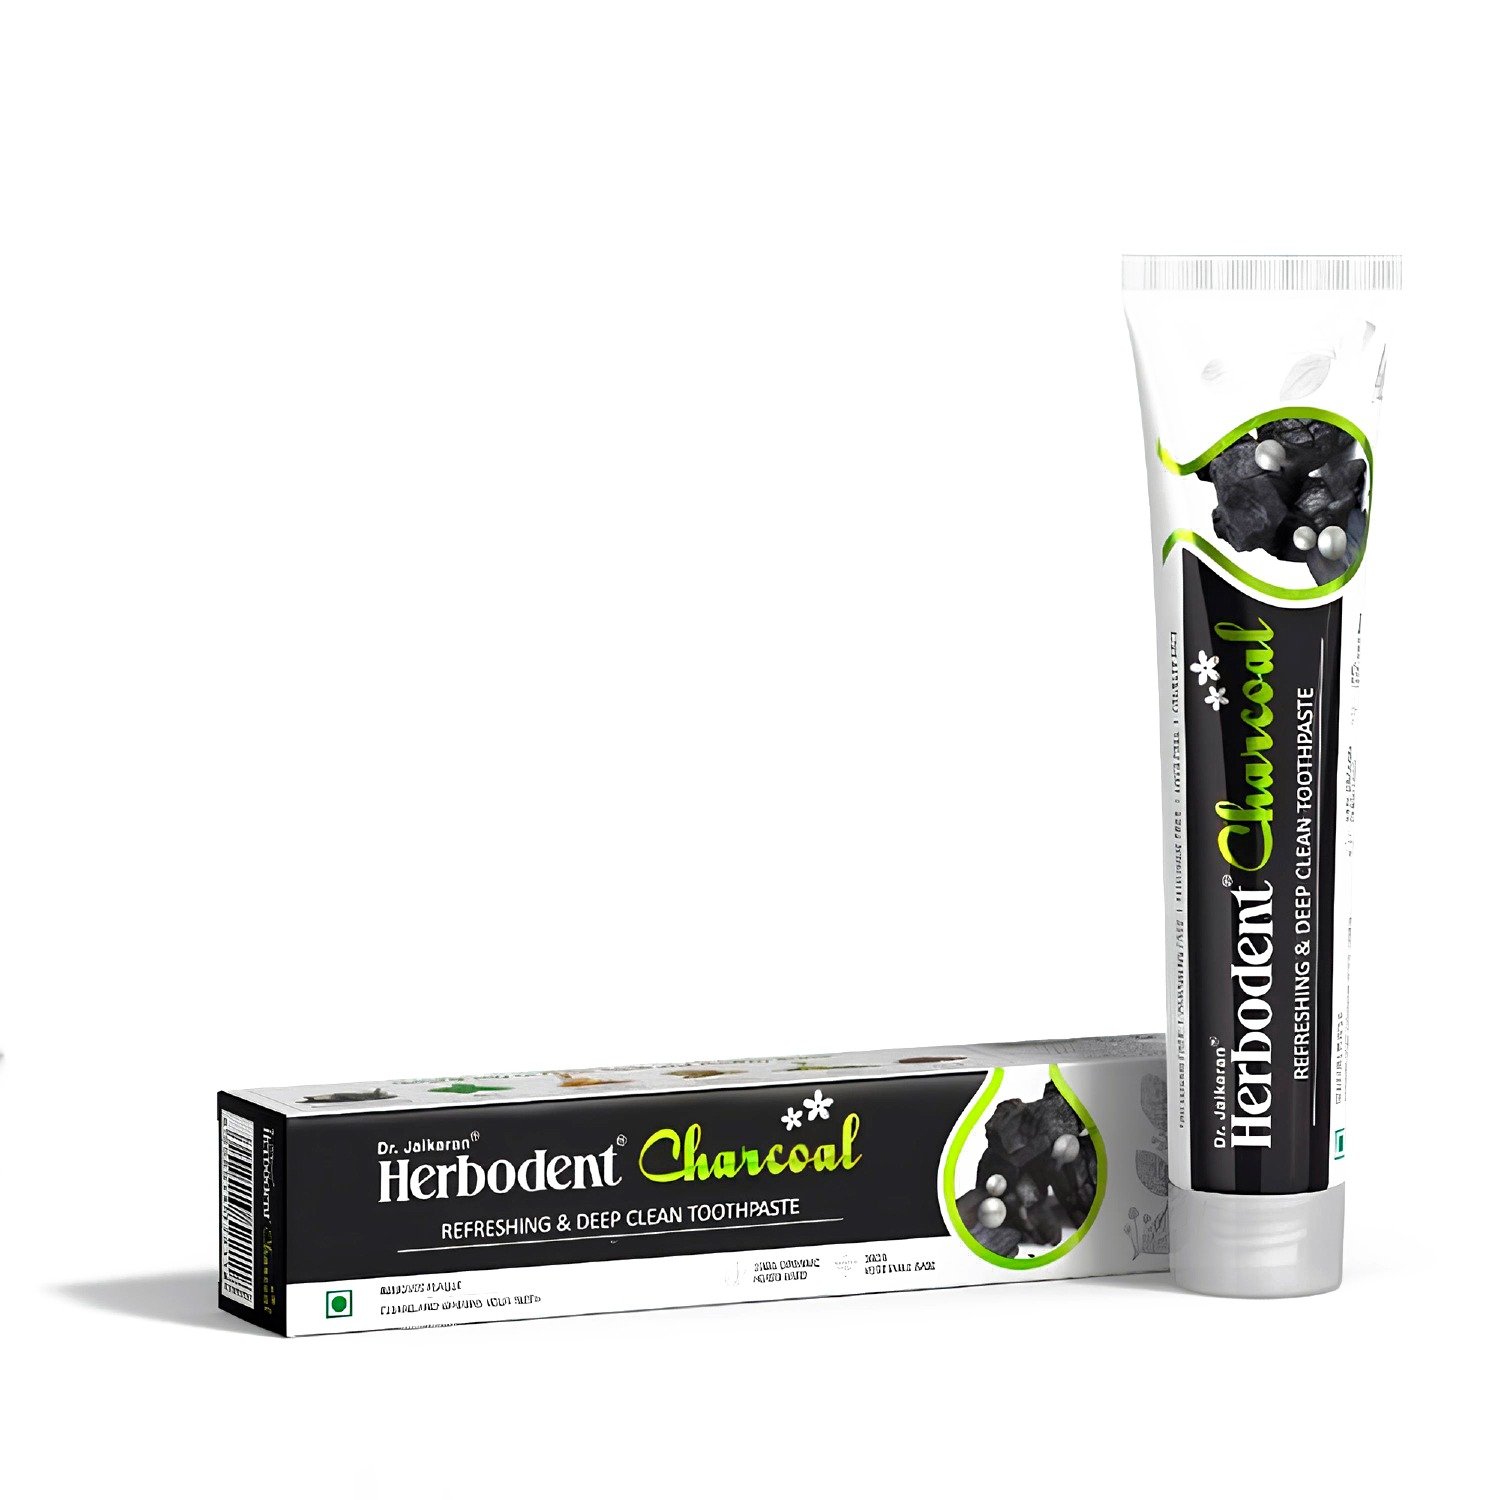 Купить Зубная паста Хербодент Чаркоул (Активированный уголь), Dr. Jaikaran, 100 гр в интернет-магазине #store#